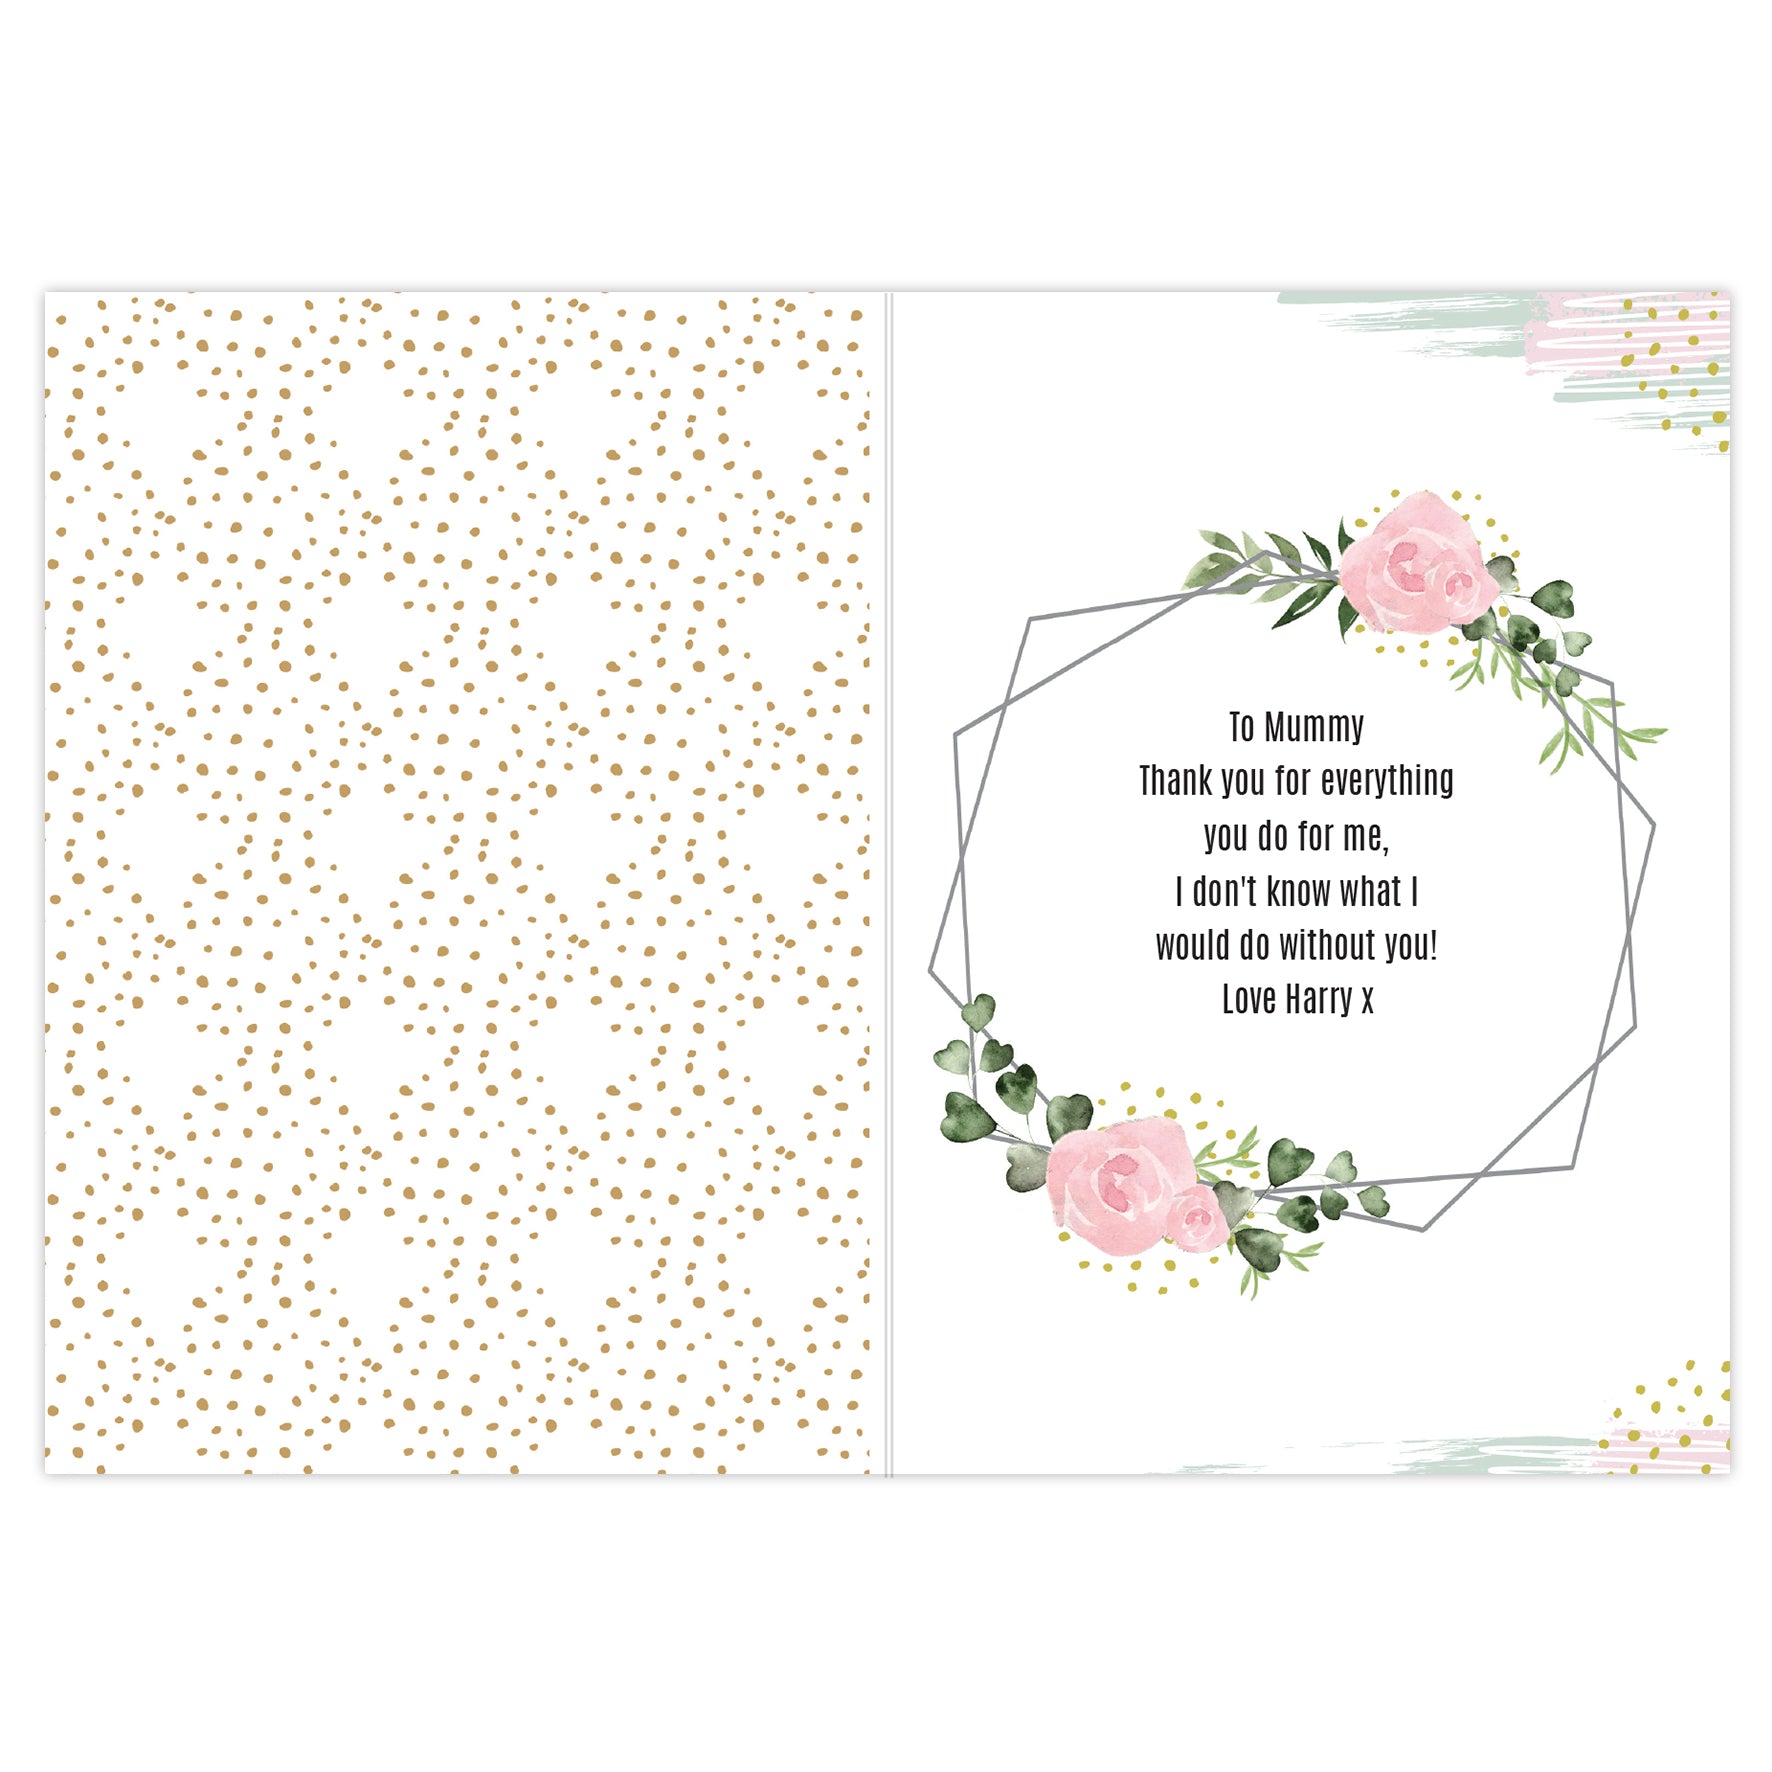 Personalised Floral Photo Upload Celebration Card - FREE STANDARD UK DELIVERY! - Violet Belle Gifts - Personalised Greeting Card With Photo Upload!